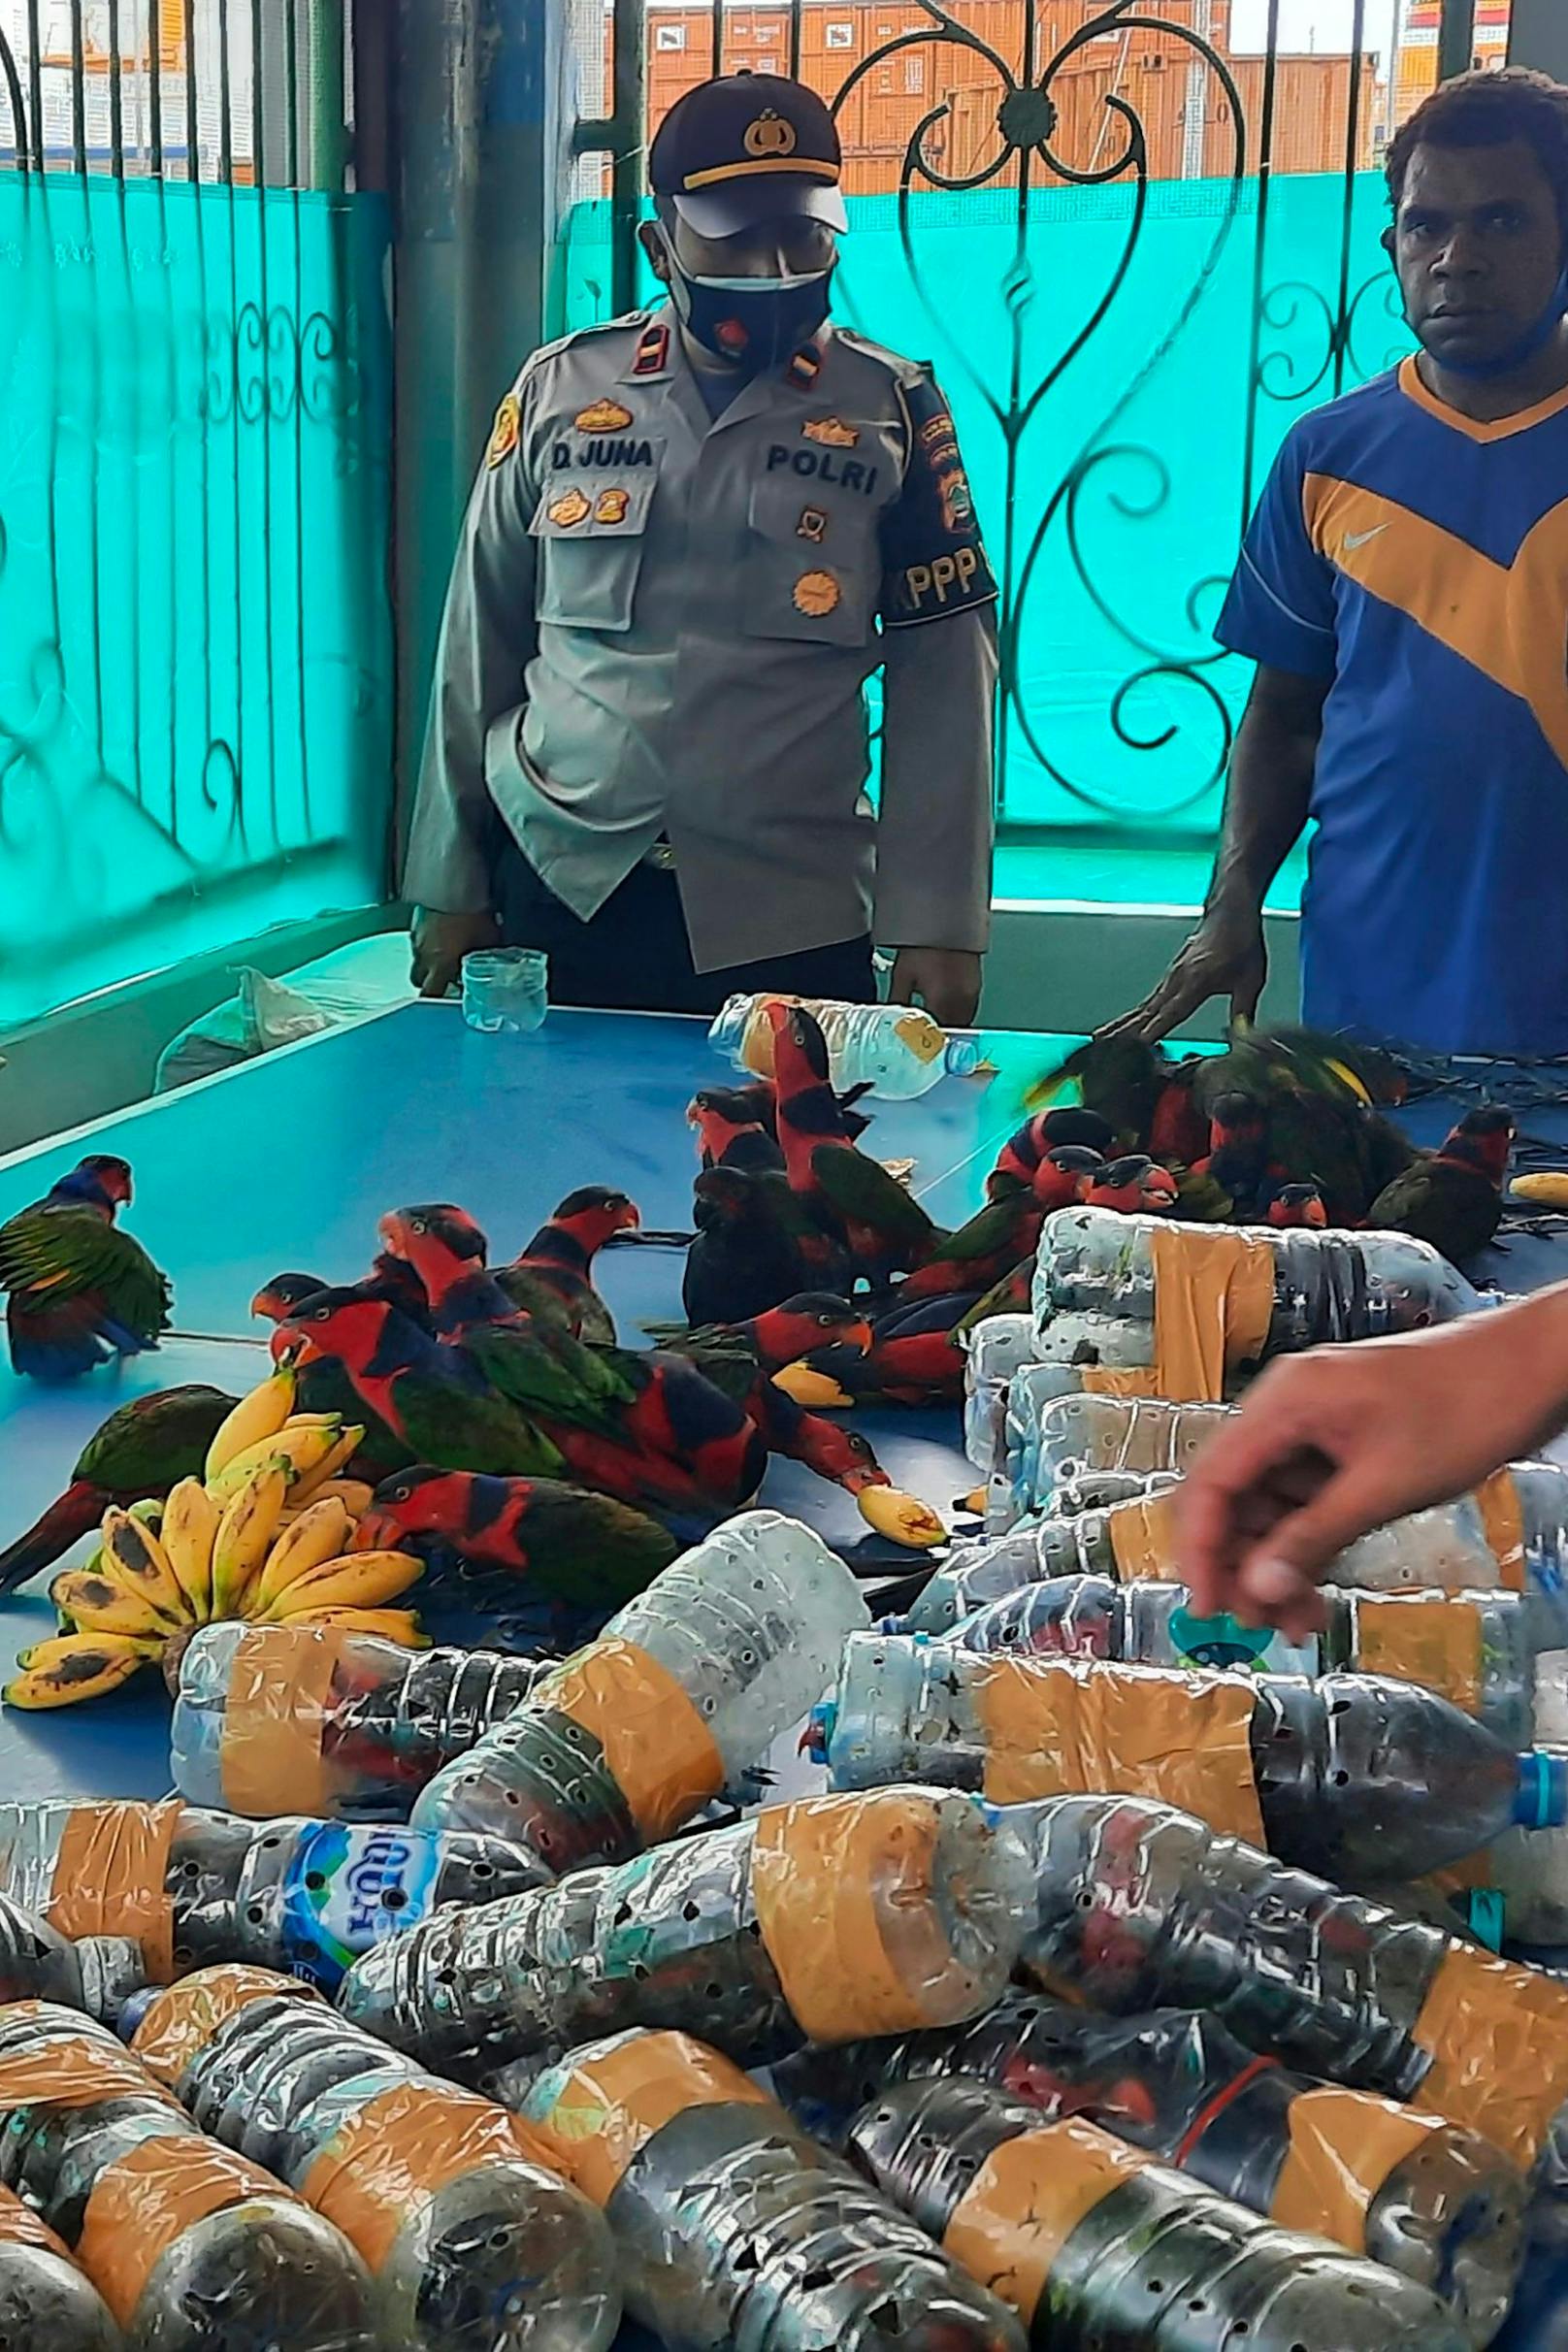 Papageien in Plastikflaschen geschmuggelt